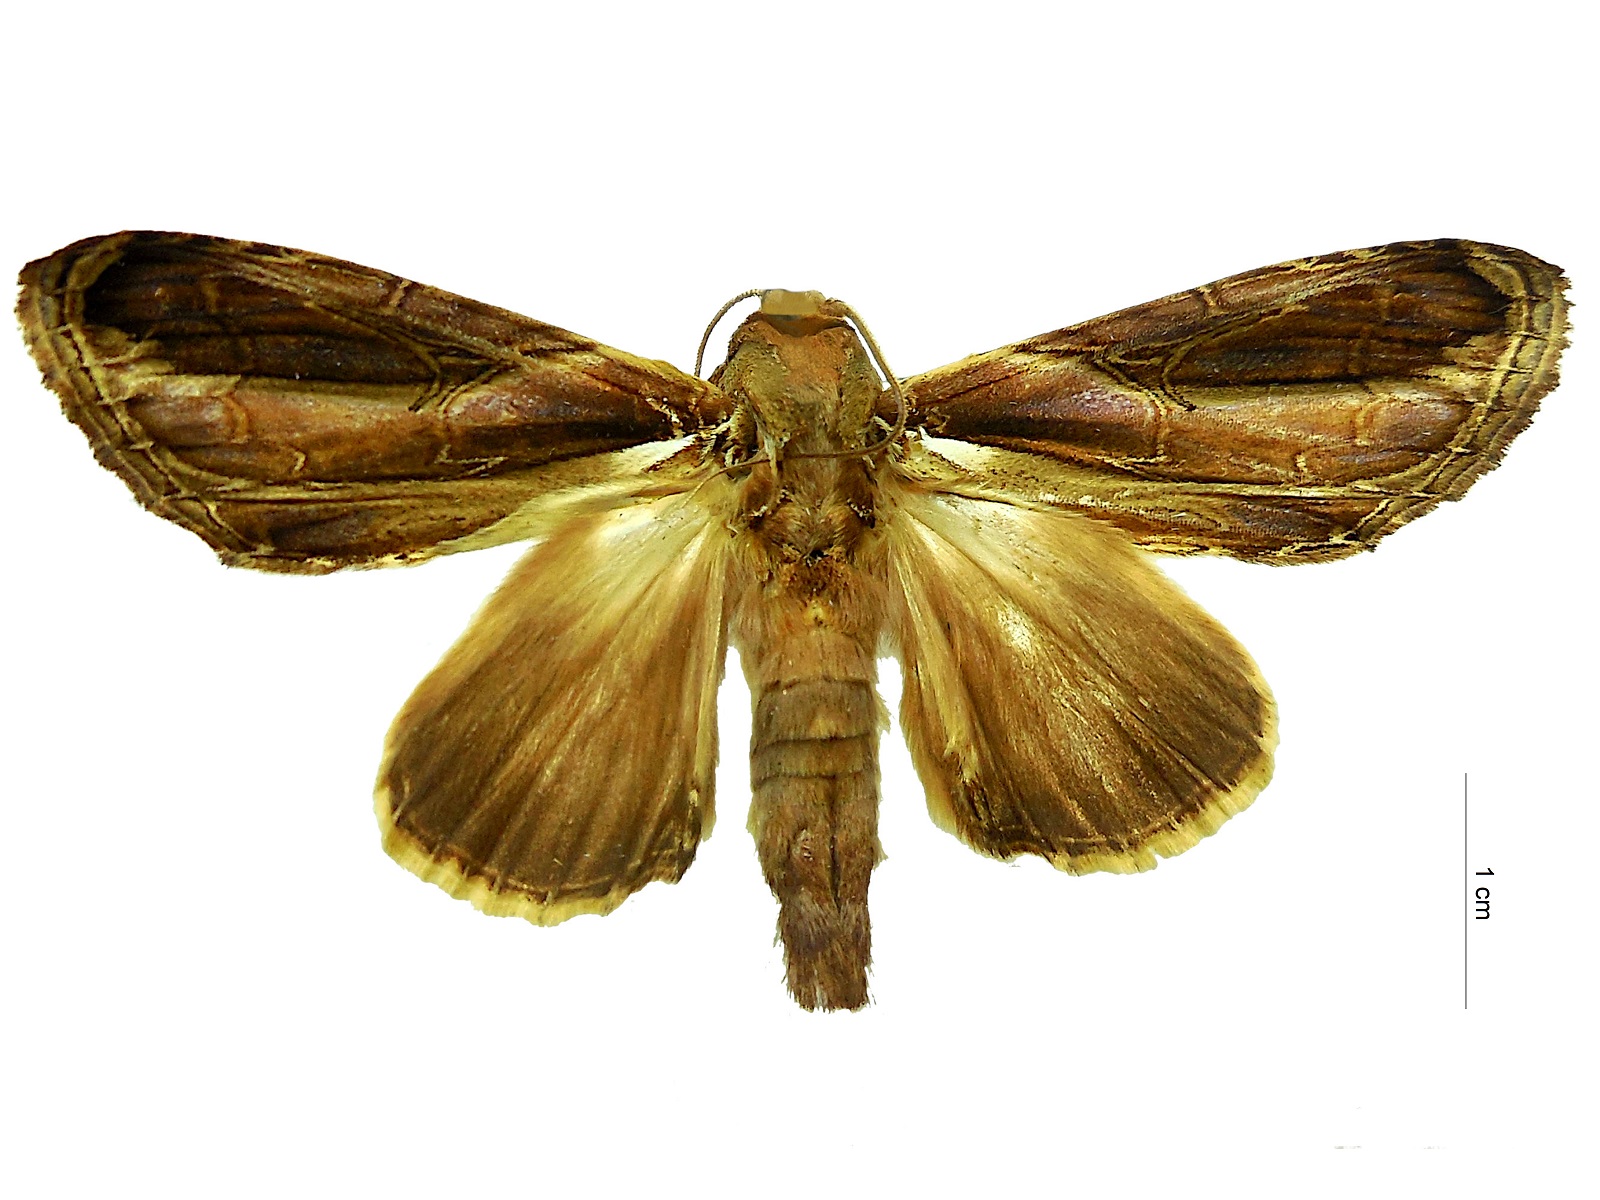 Draudtargia merita (Schaus, 1905) 